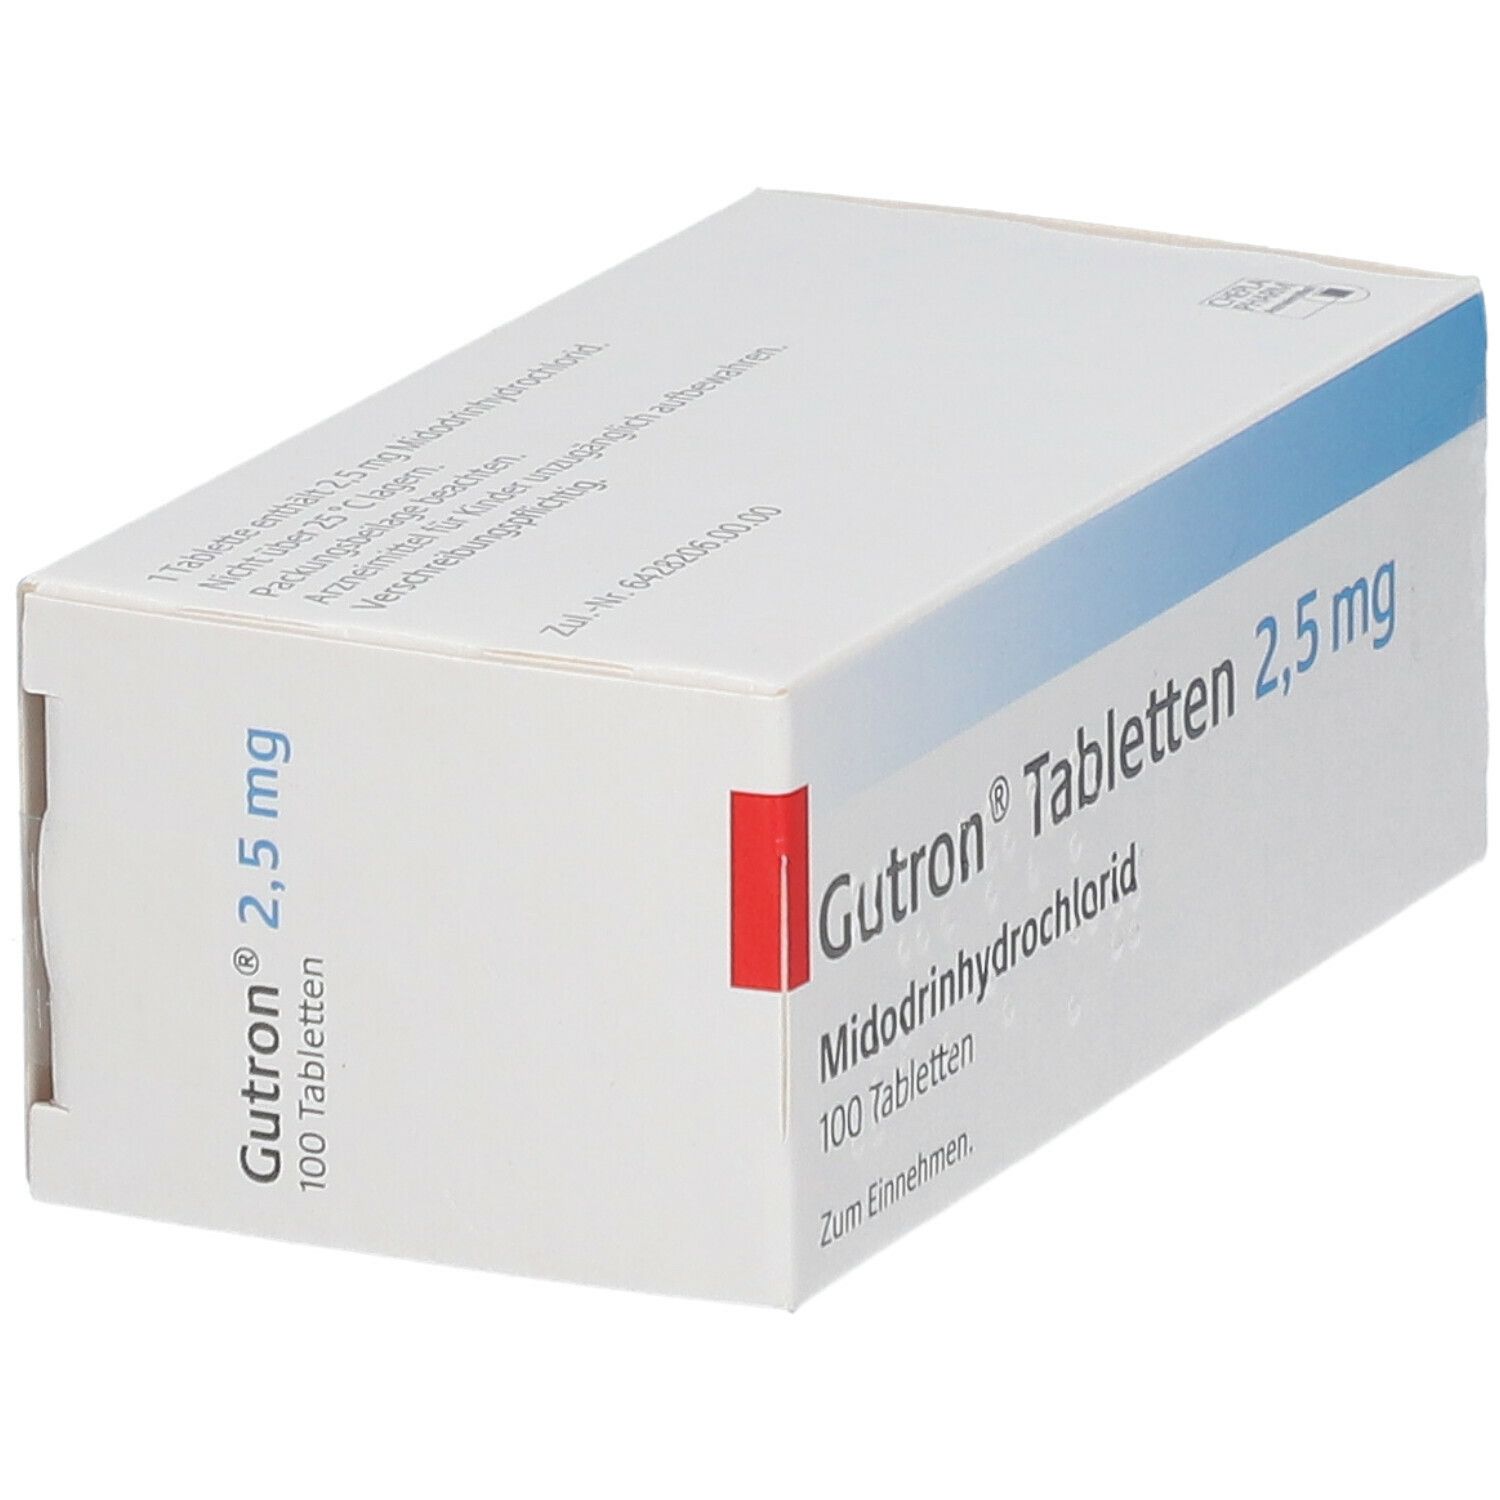 Gutron® 2,5 mg